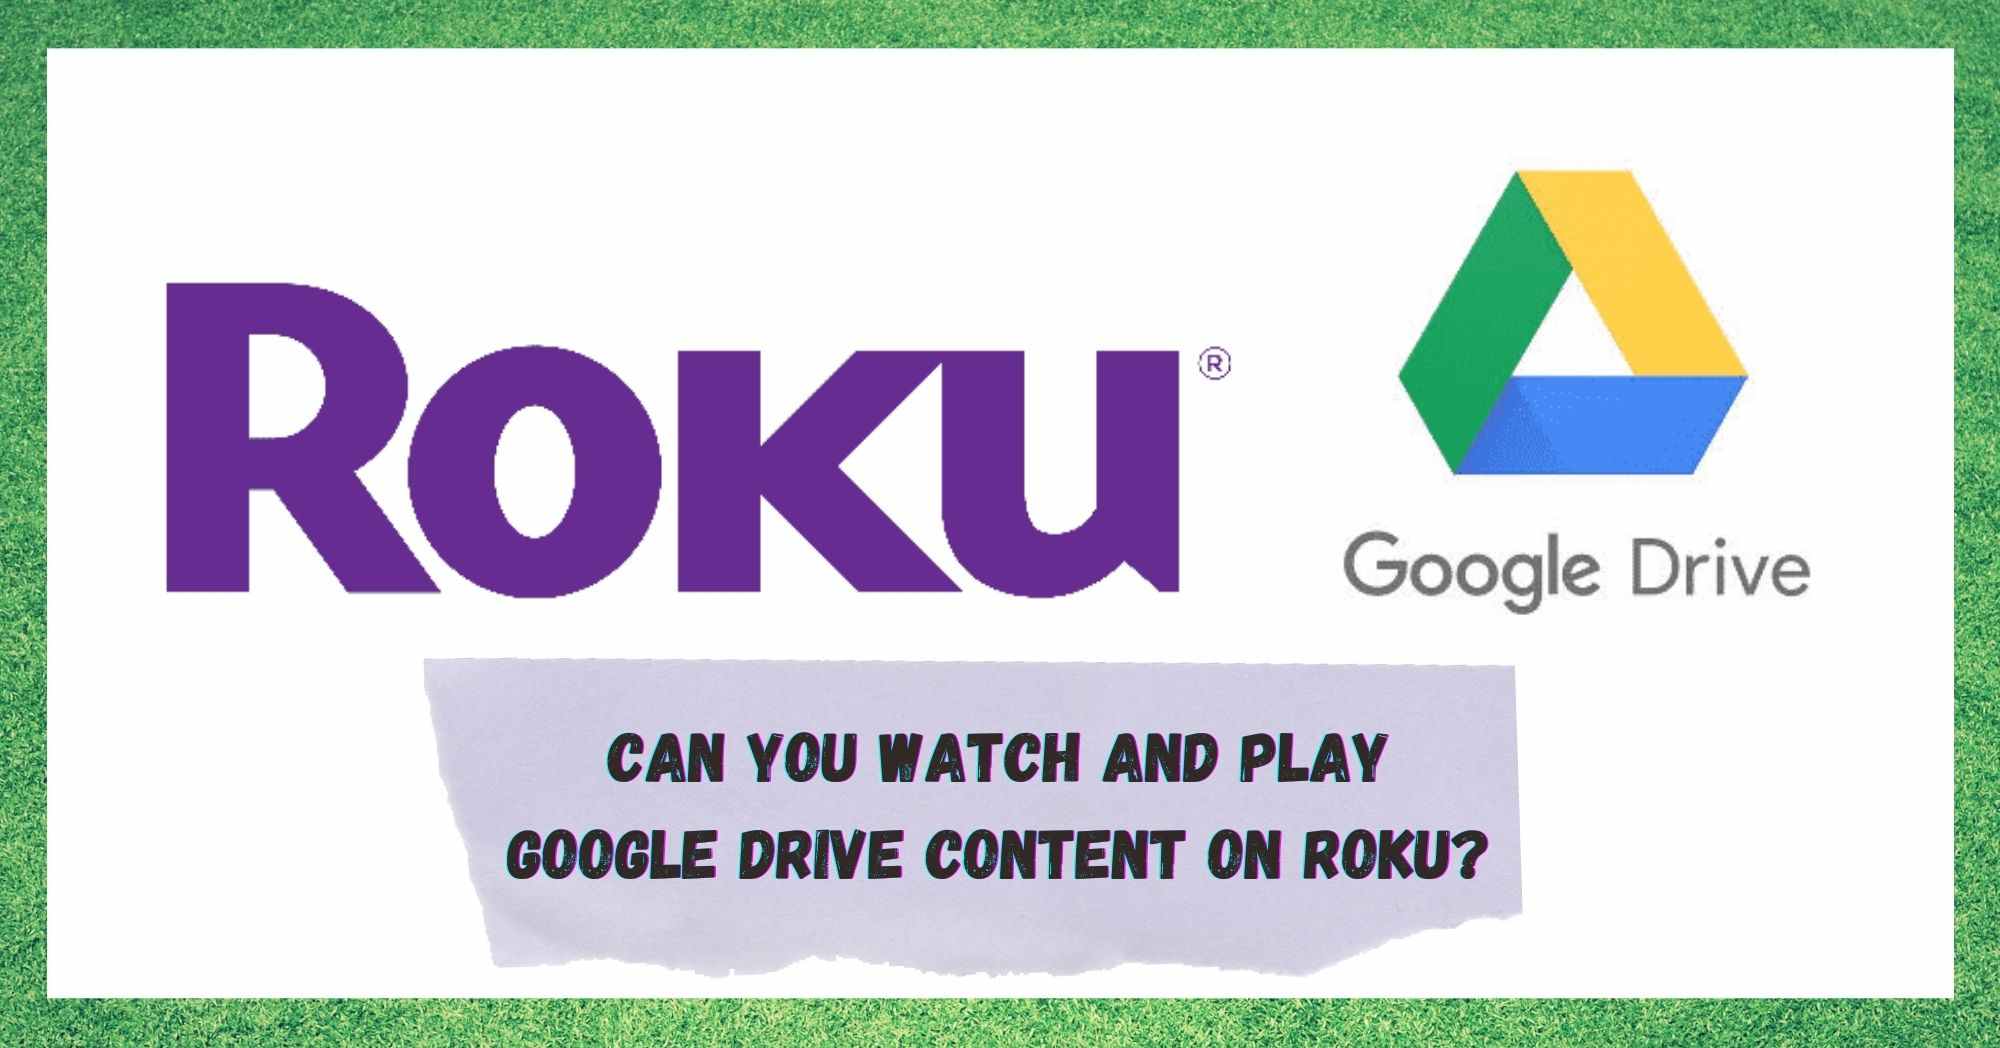 Kun je inhoud van Google Drive bekijken en afspelen op Roku?